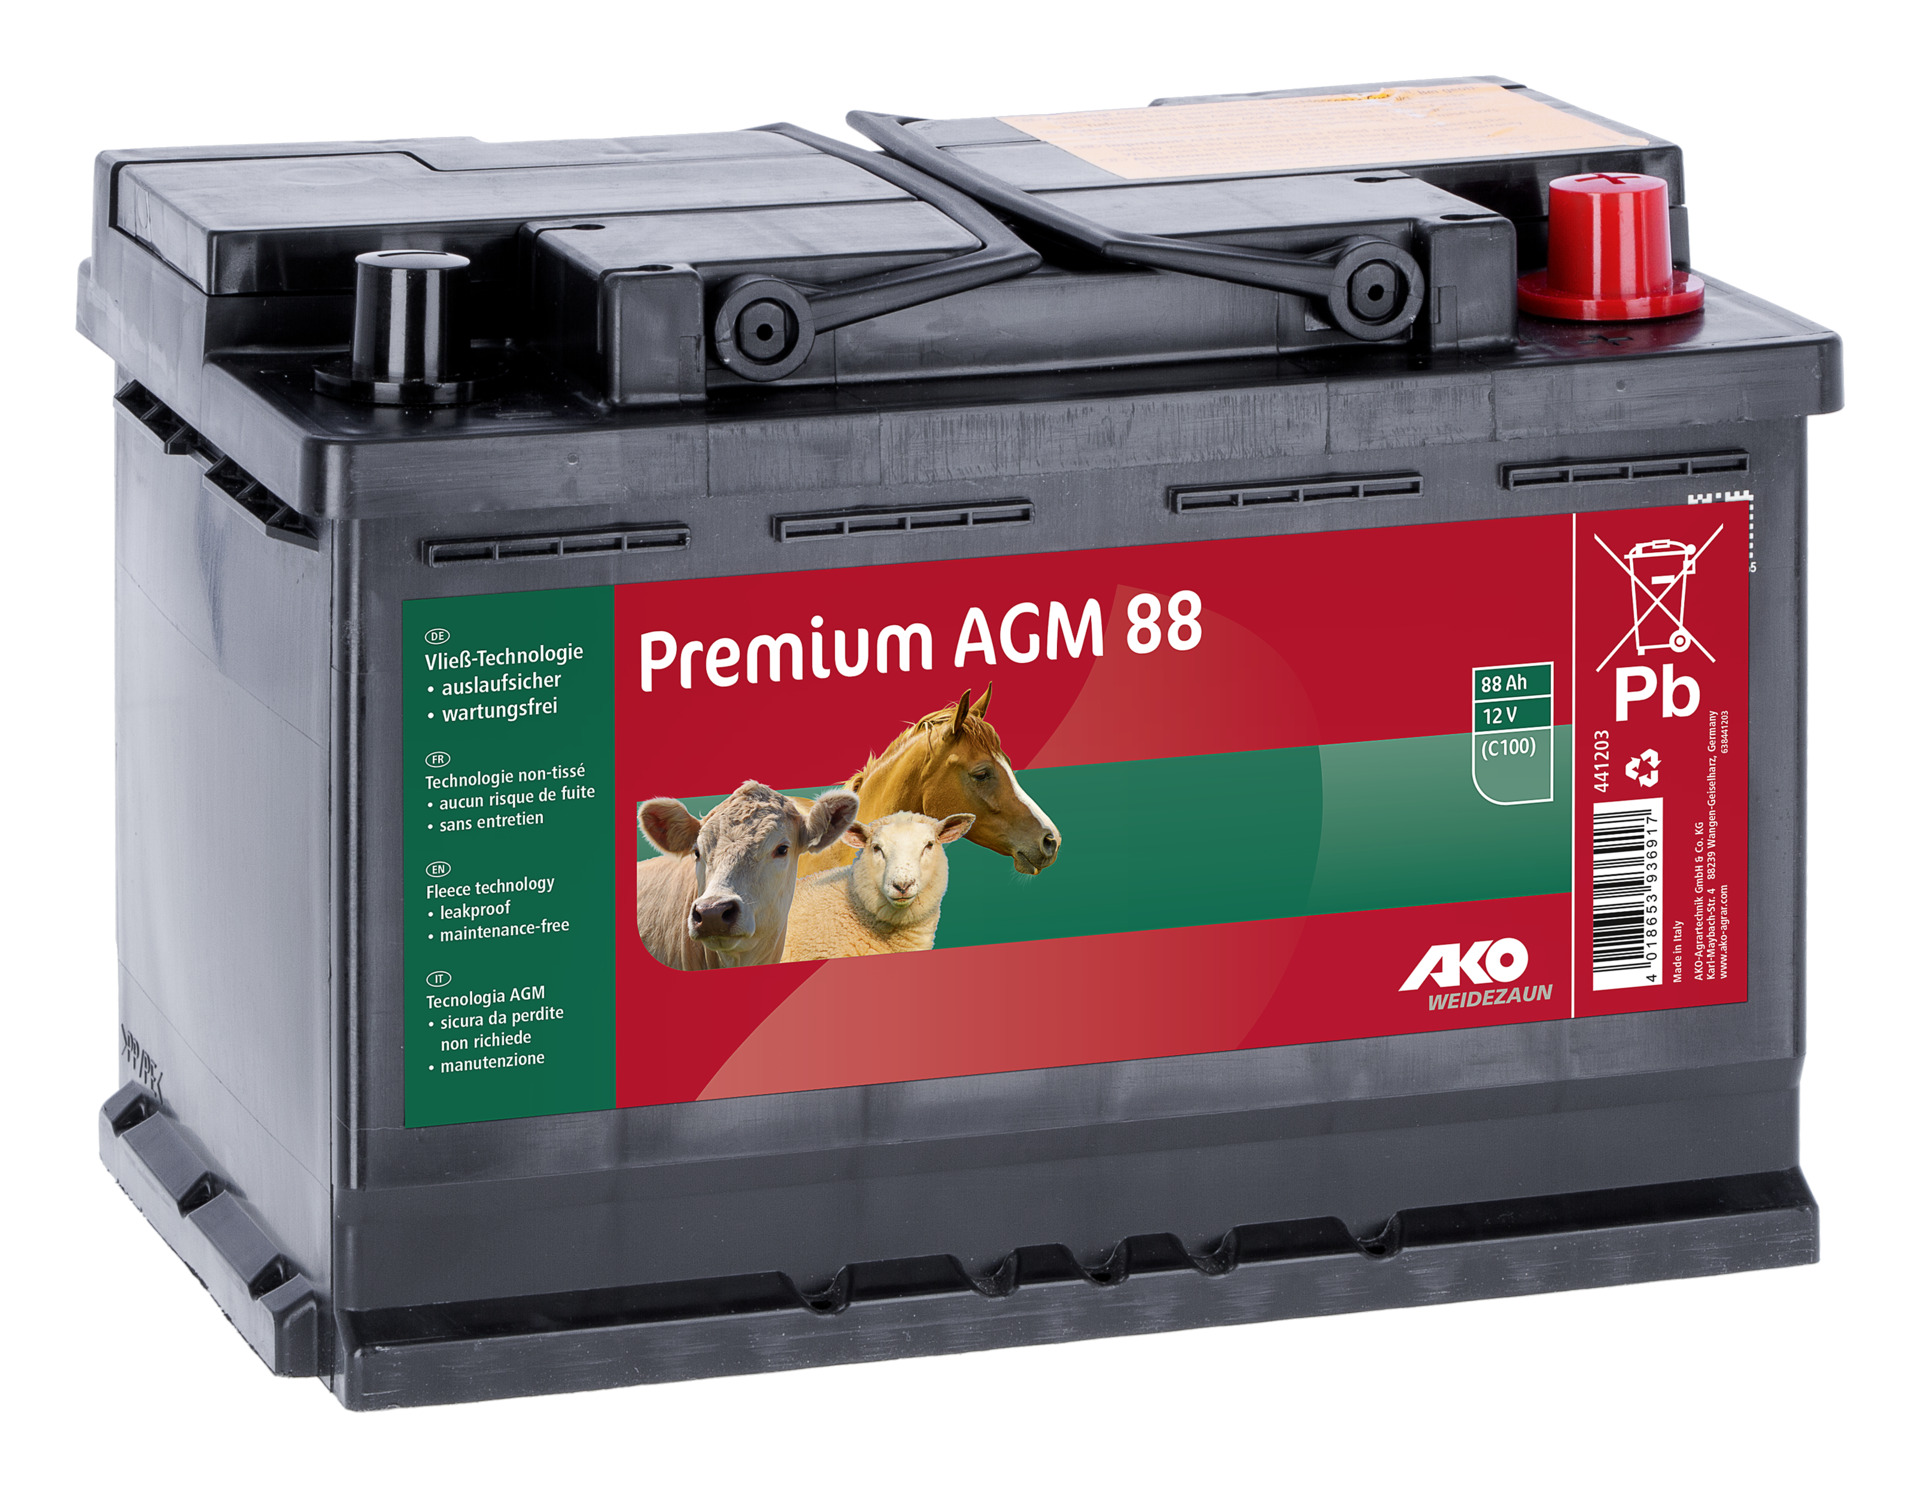 Albert Kerbl GmbH AKO Premium AGM Batterie 88 AH